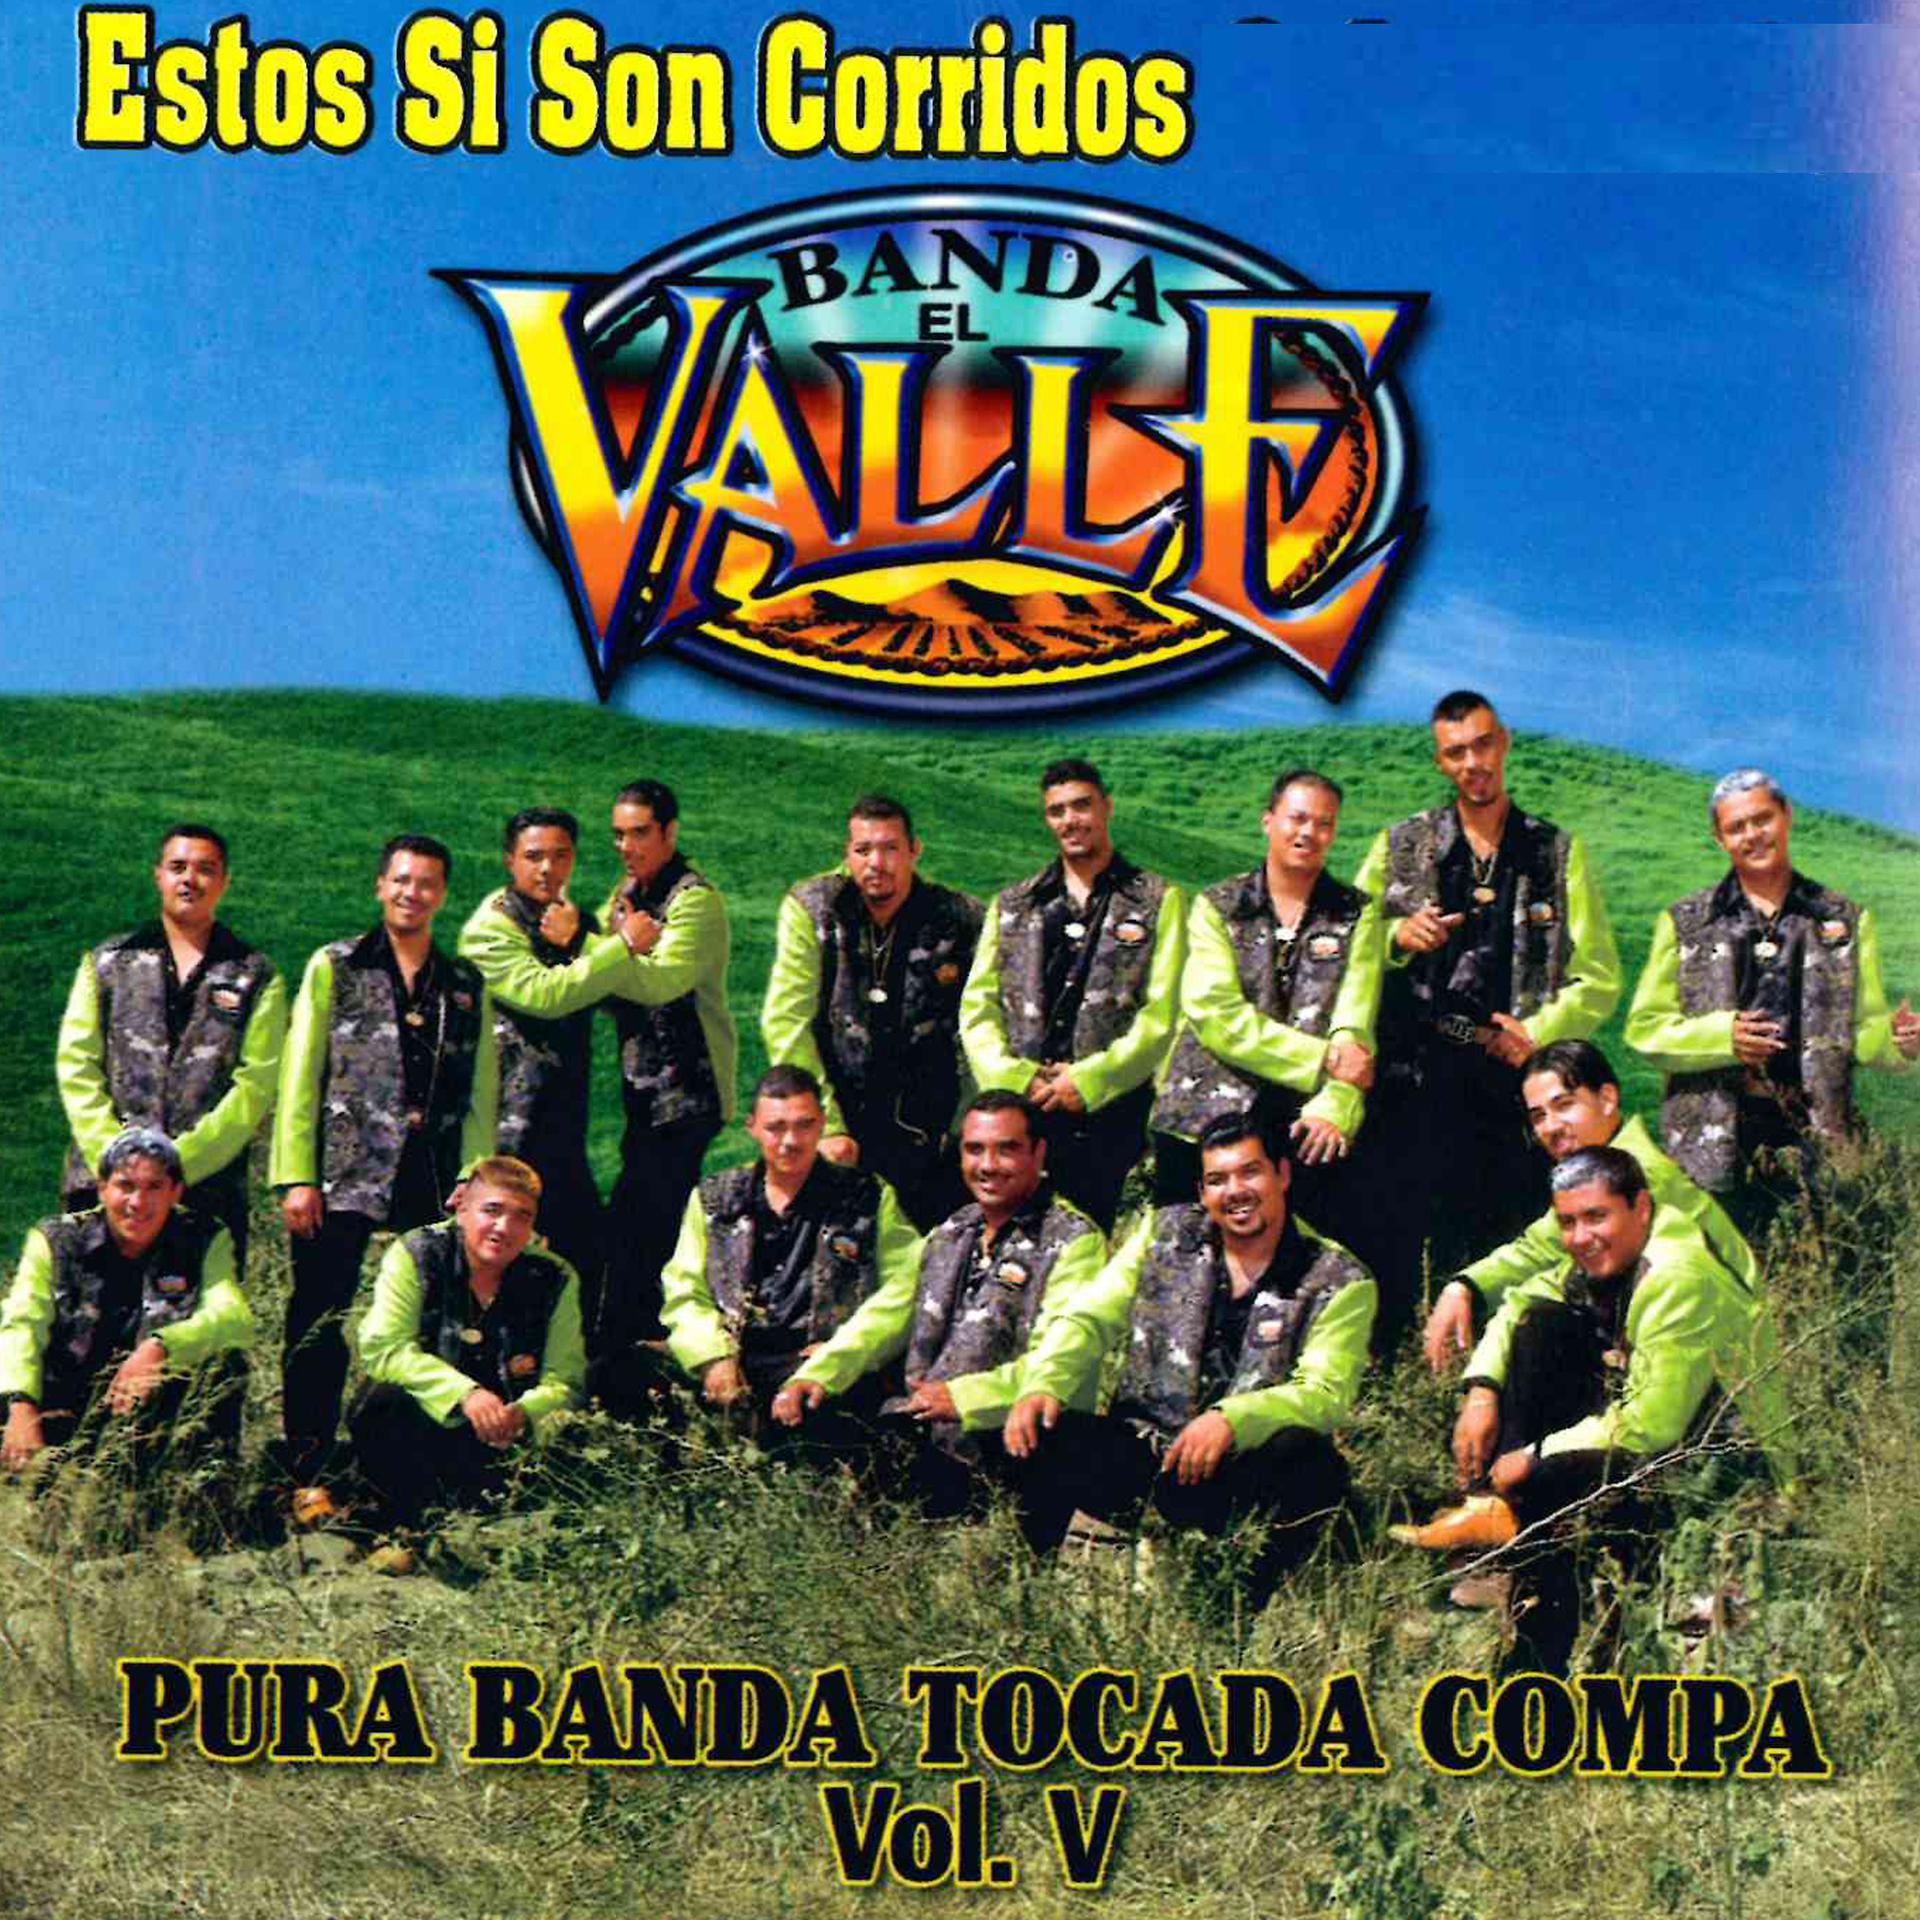 Постер альбома Estos Si Son Corridos "Pura Banda Tocada Compa," Vol. 5